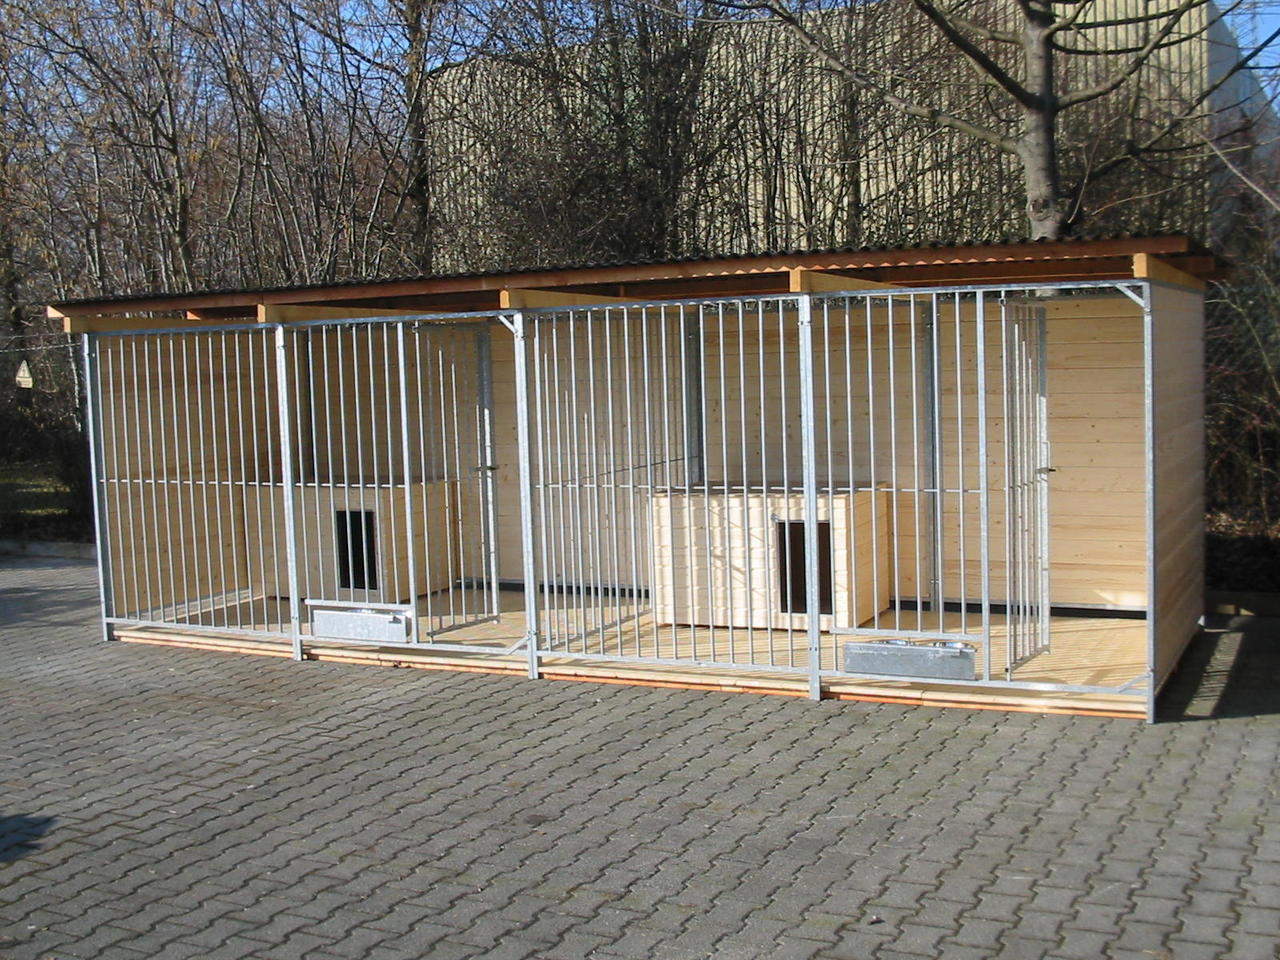 Sonderserie Doppelzwinger 2x4 m mit Zusatzausstattung gegen Aufpreis: Holzboden, 2 Hundehütten und ausschwenkbare Futtersets